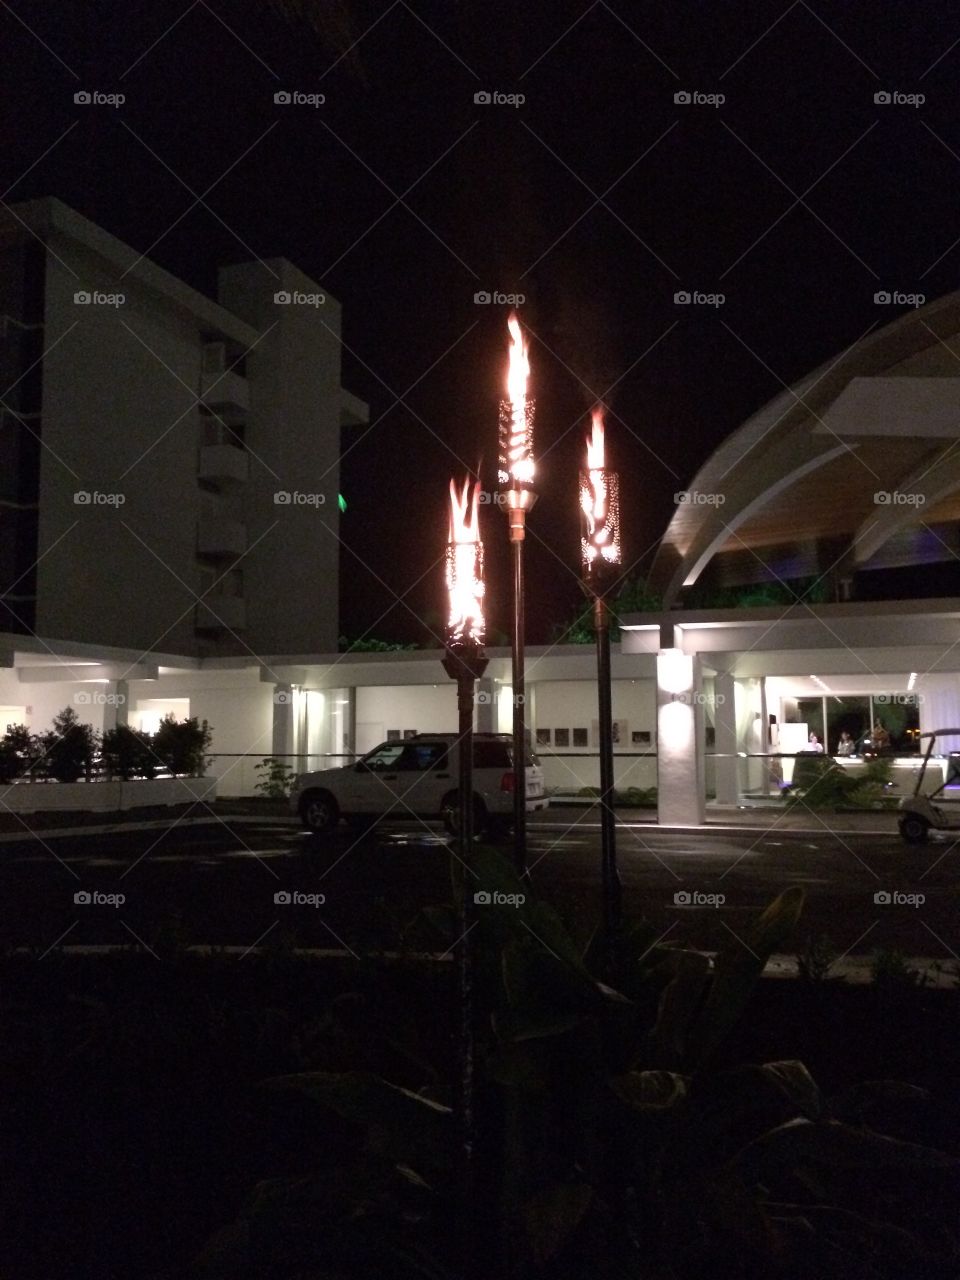 Flaming Hawaiian torches